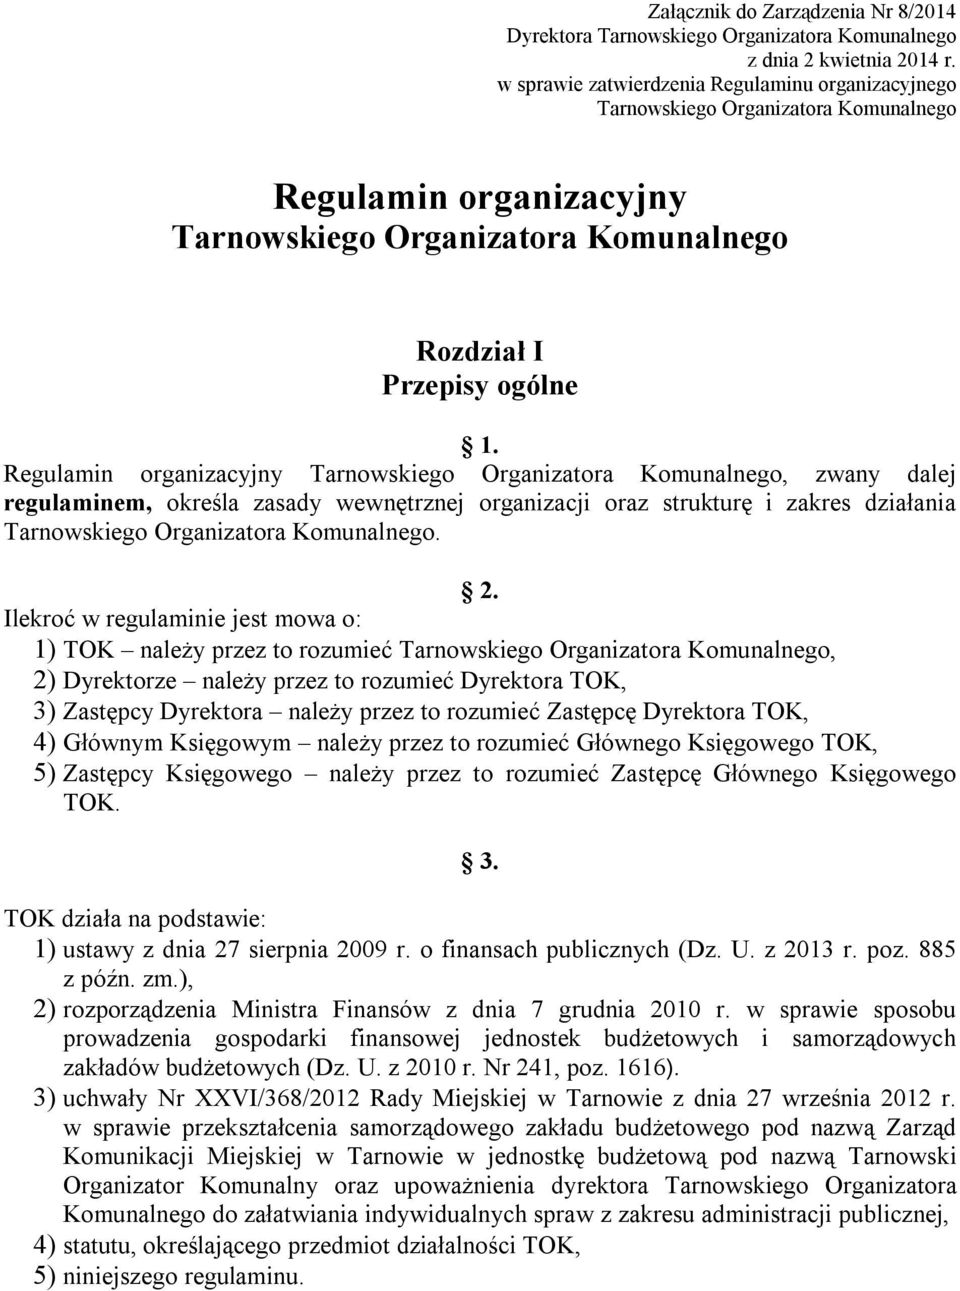 Regulamin organizacyjny Tarnowskiego Organizatora Komunalnego, zwany dalej regulaminem, określa zasady wewnętrznej organizacji oraz strukturę i zakres działania Tarnowskiego Organizatora Komunalnego.